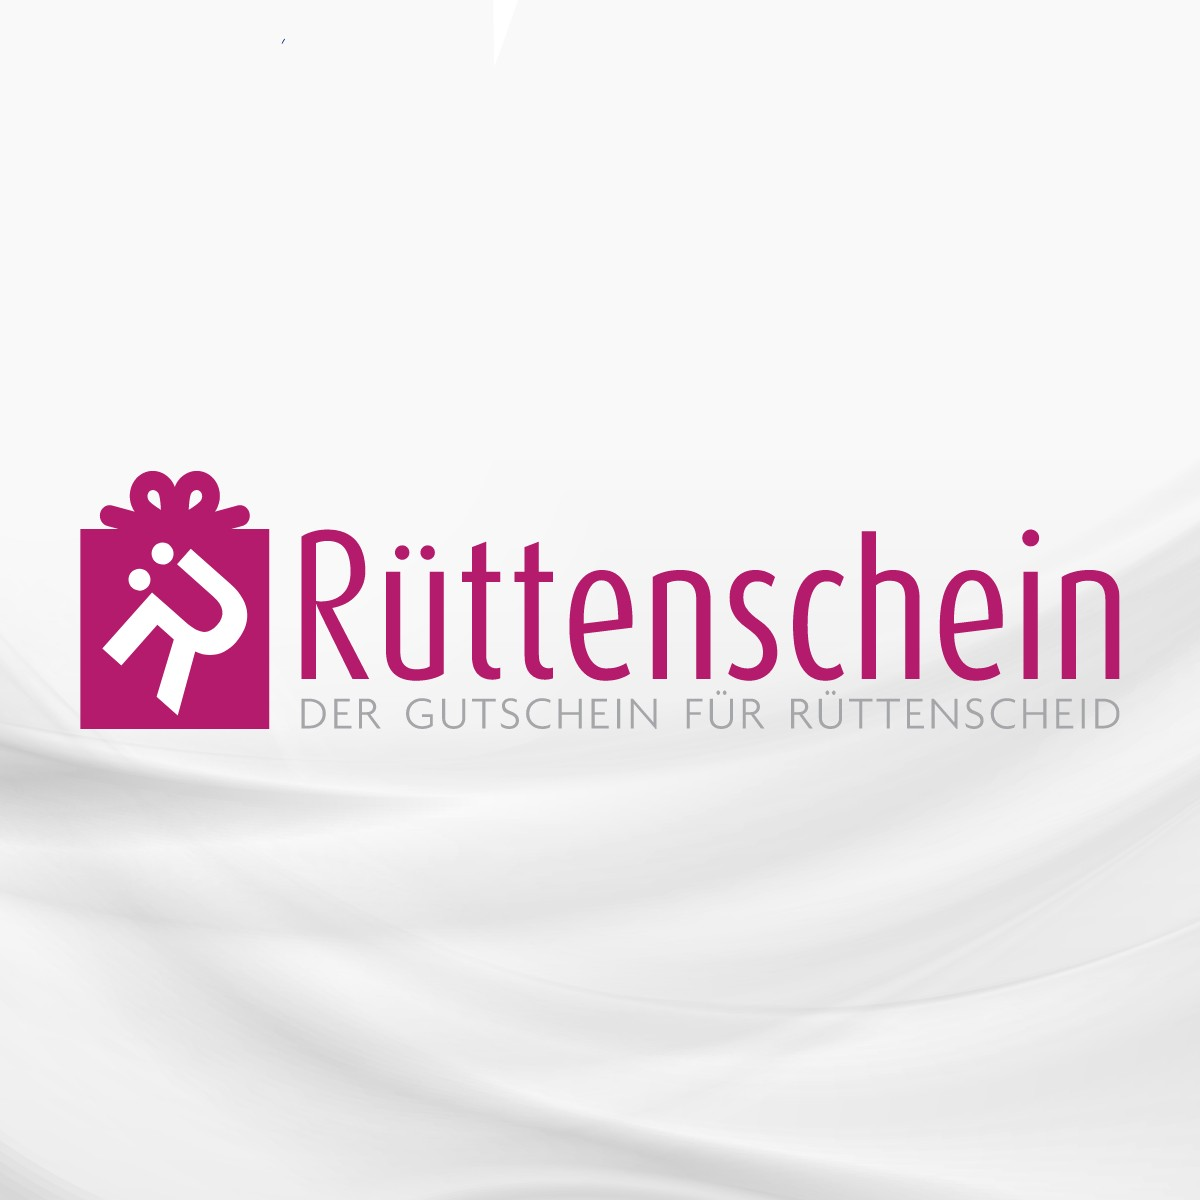 (c) Ruettenscheid-gutschein.de